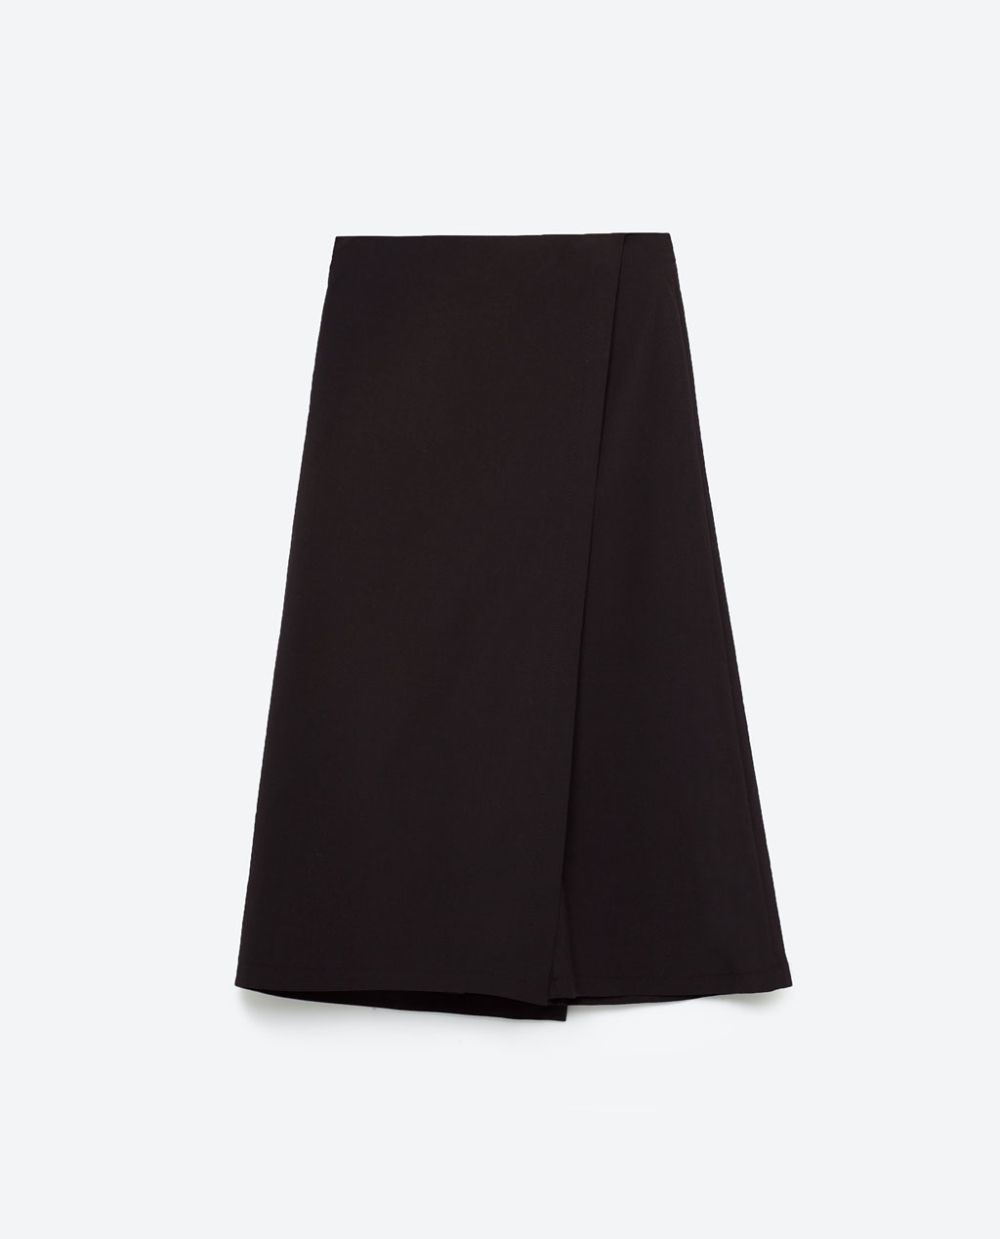 Falda pantalón Zara (22.99 euros).